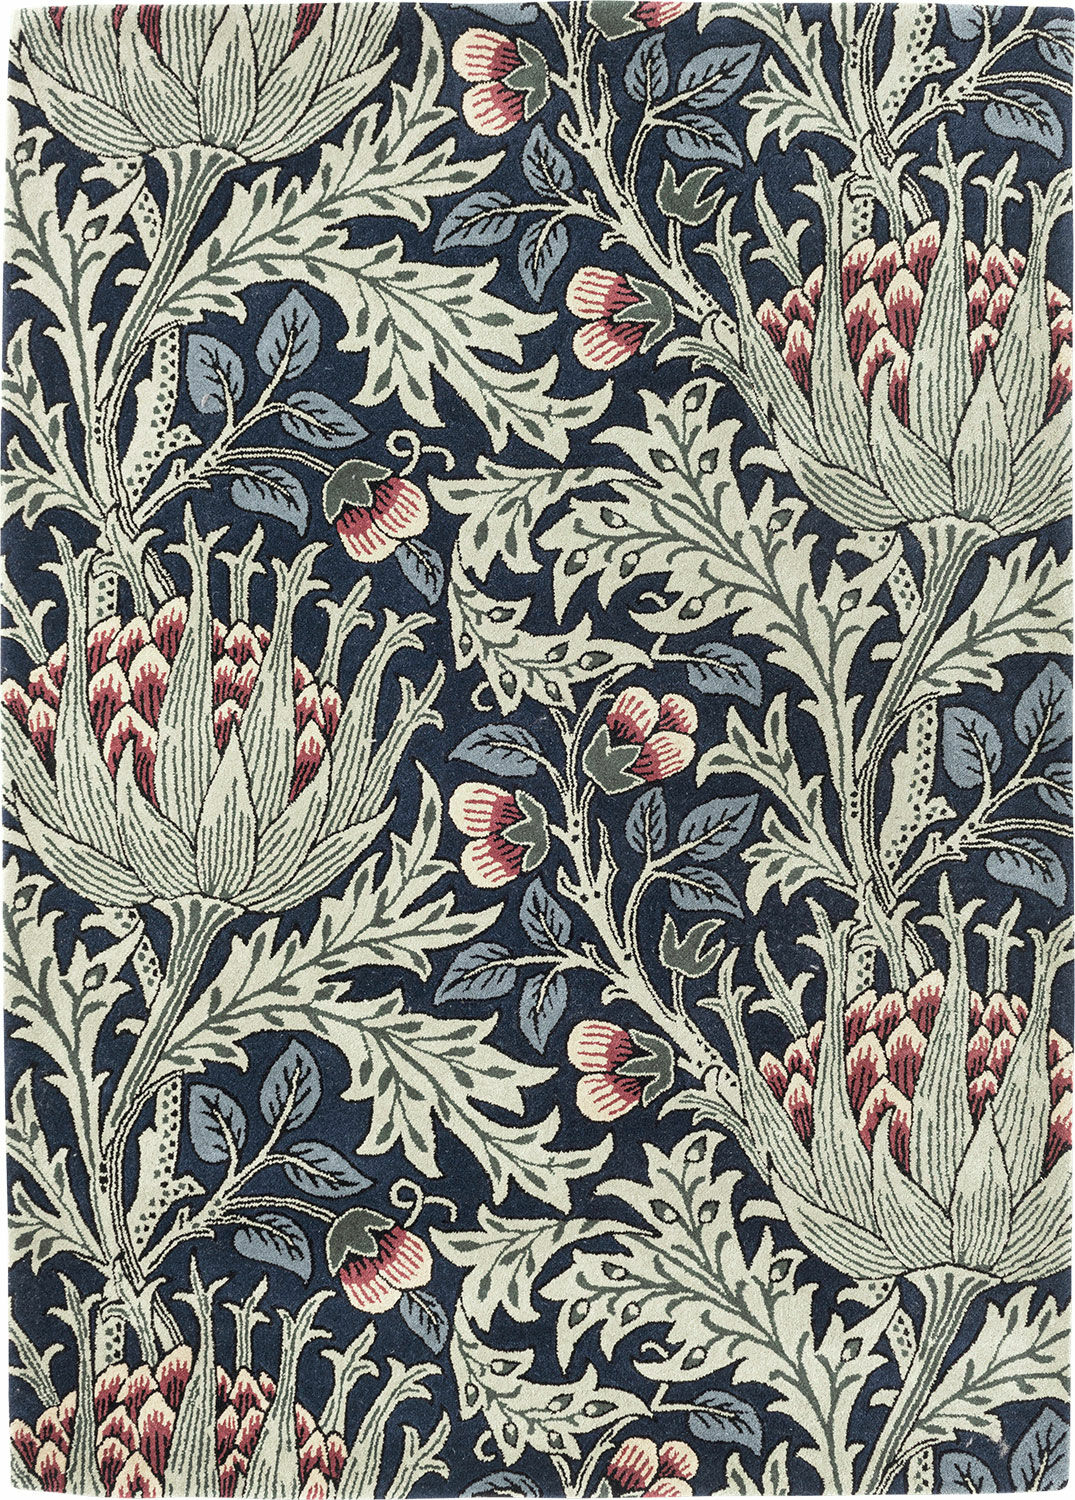 Teppich "Artichoke" (140 x 200 cm) - nach William Morris